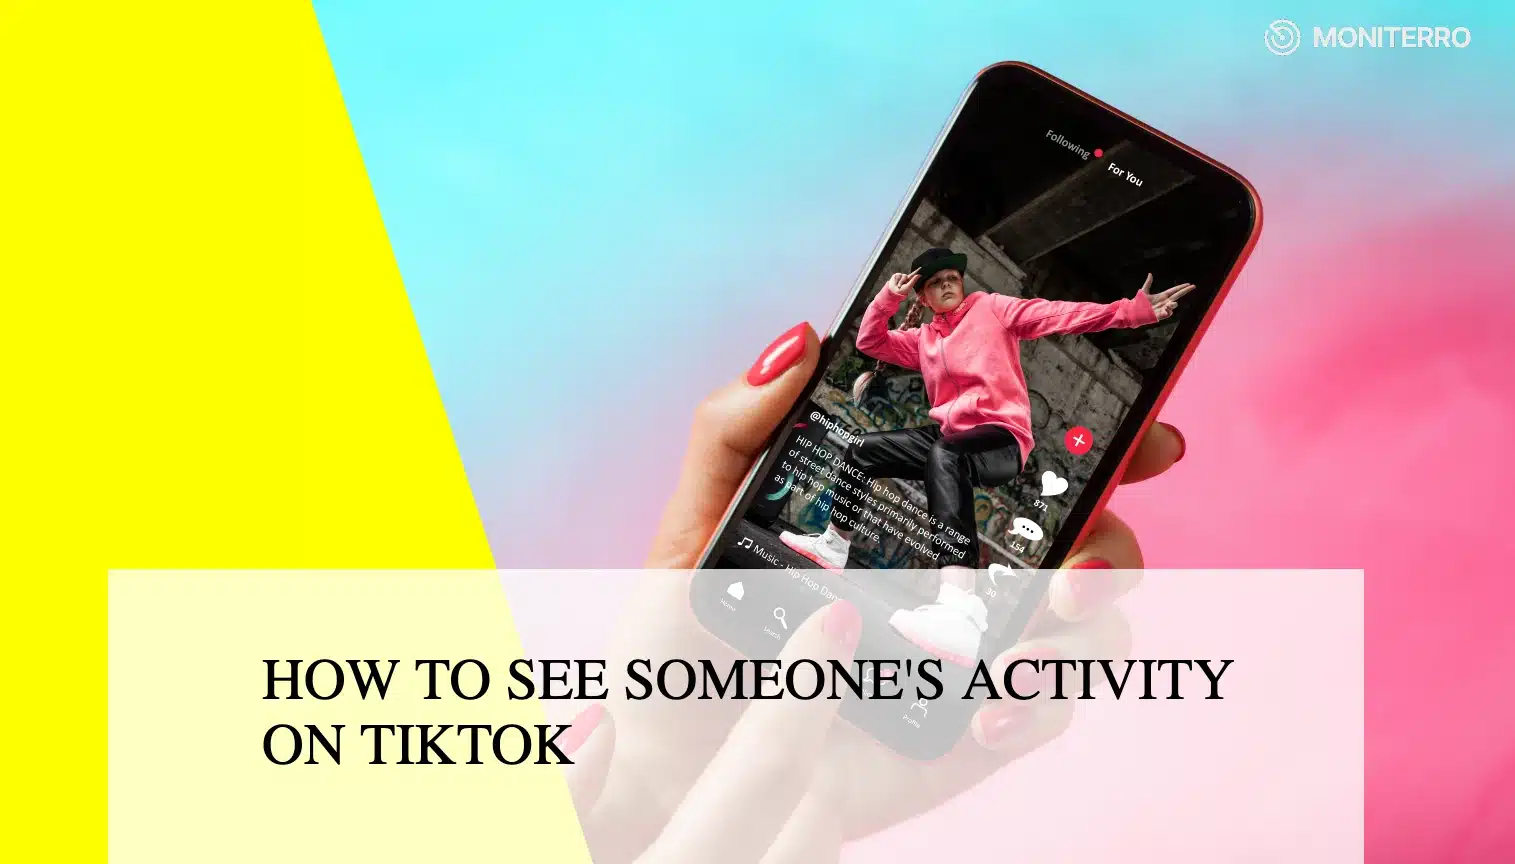 Jak zobaczyć czyjąś aktywność na TikTok?